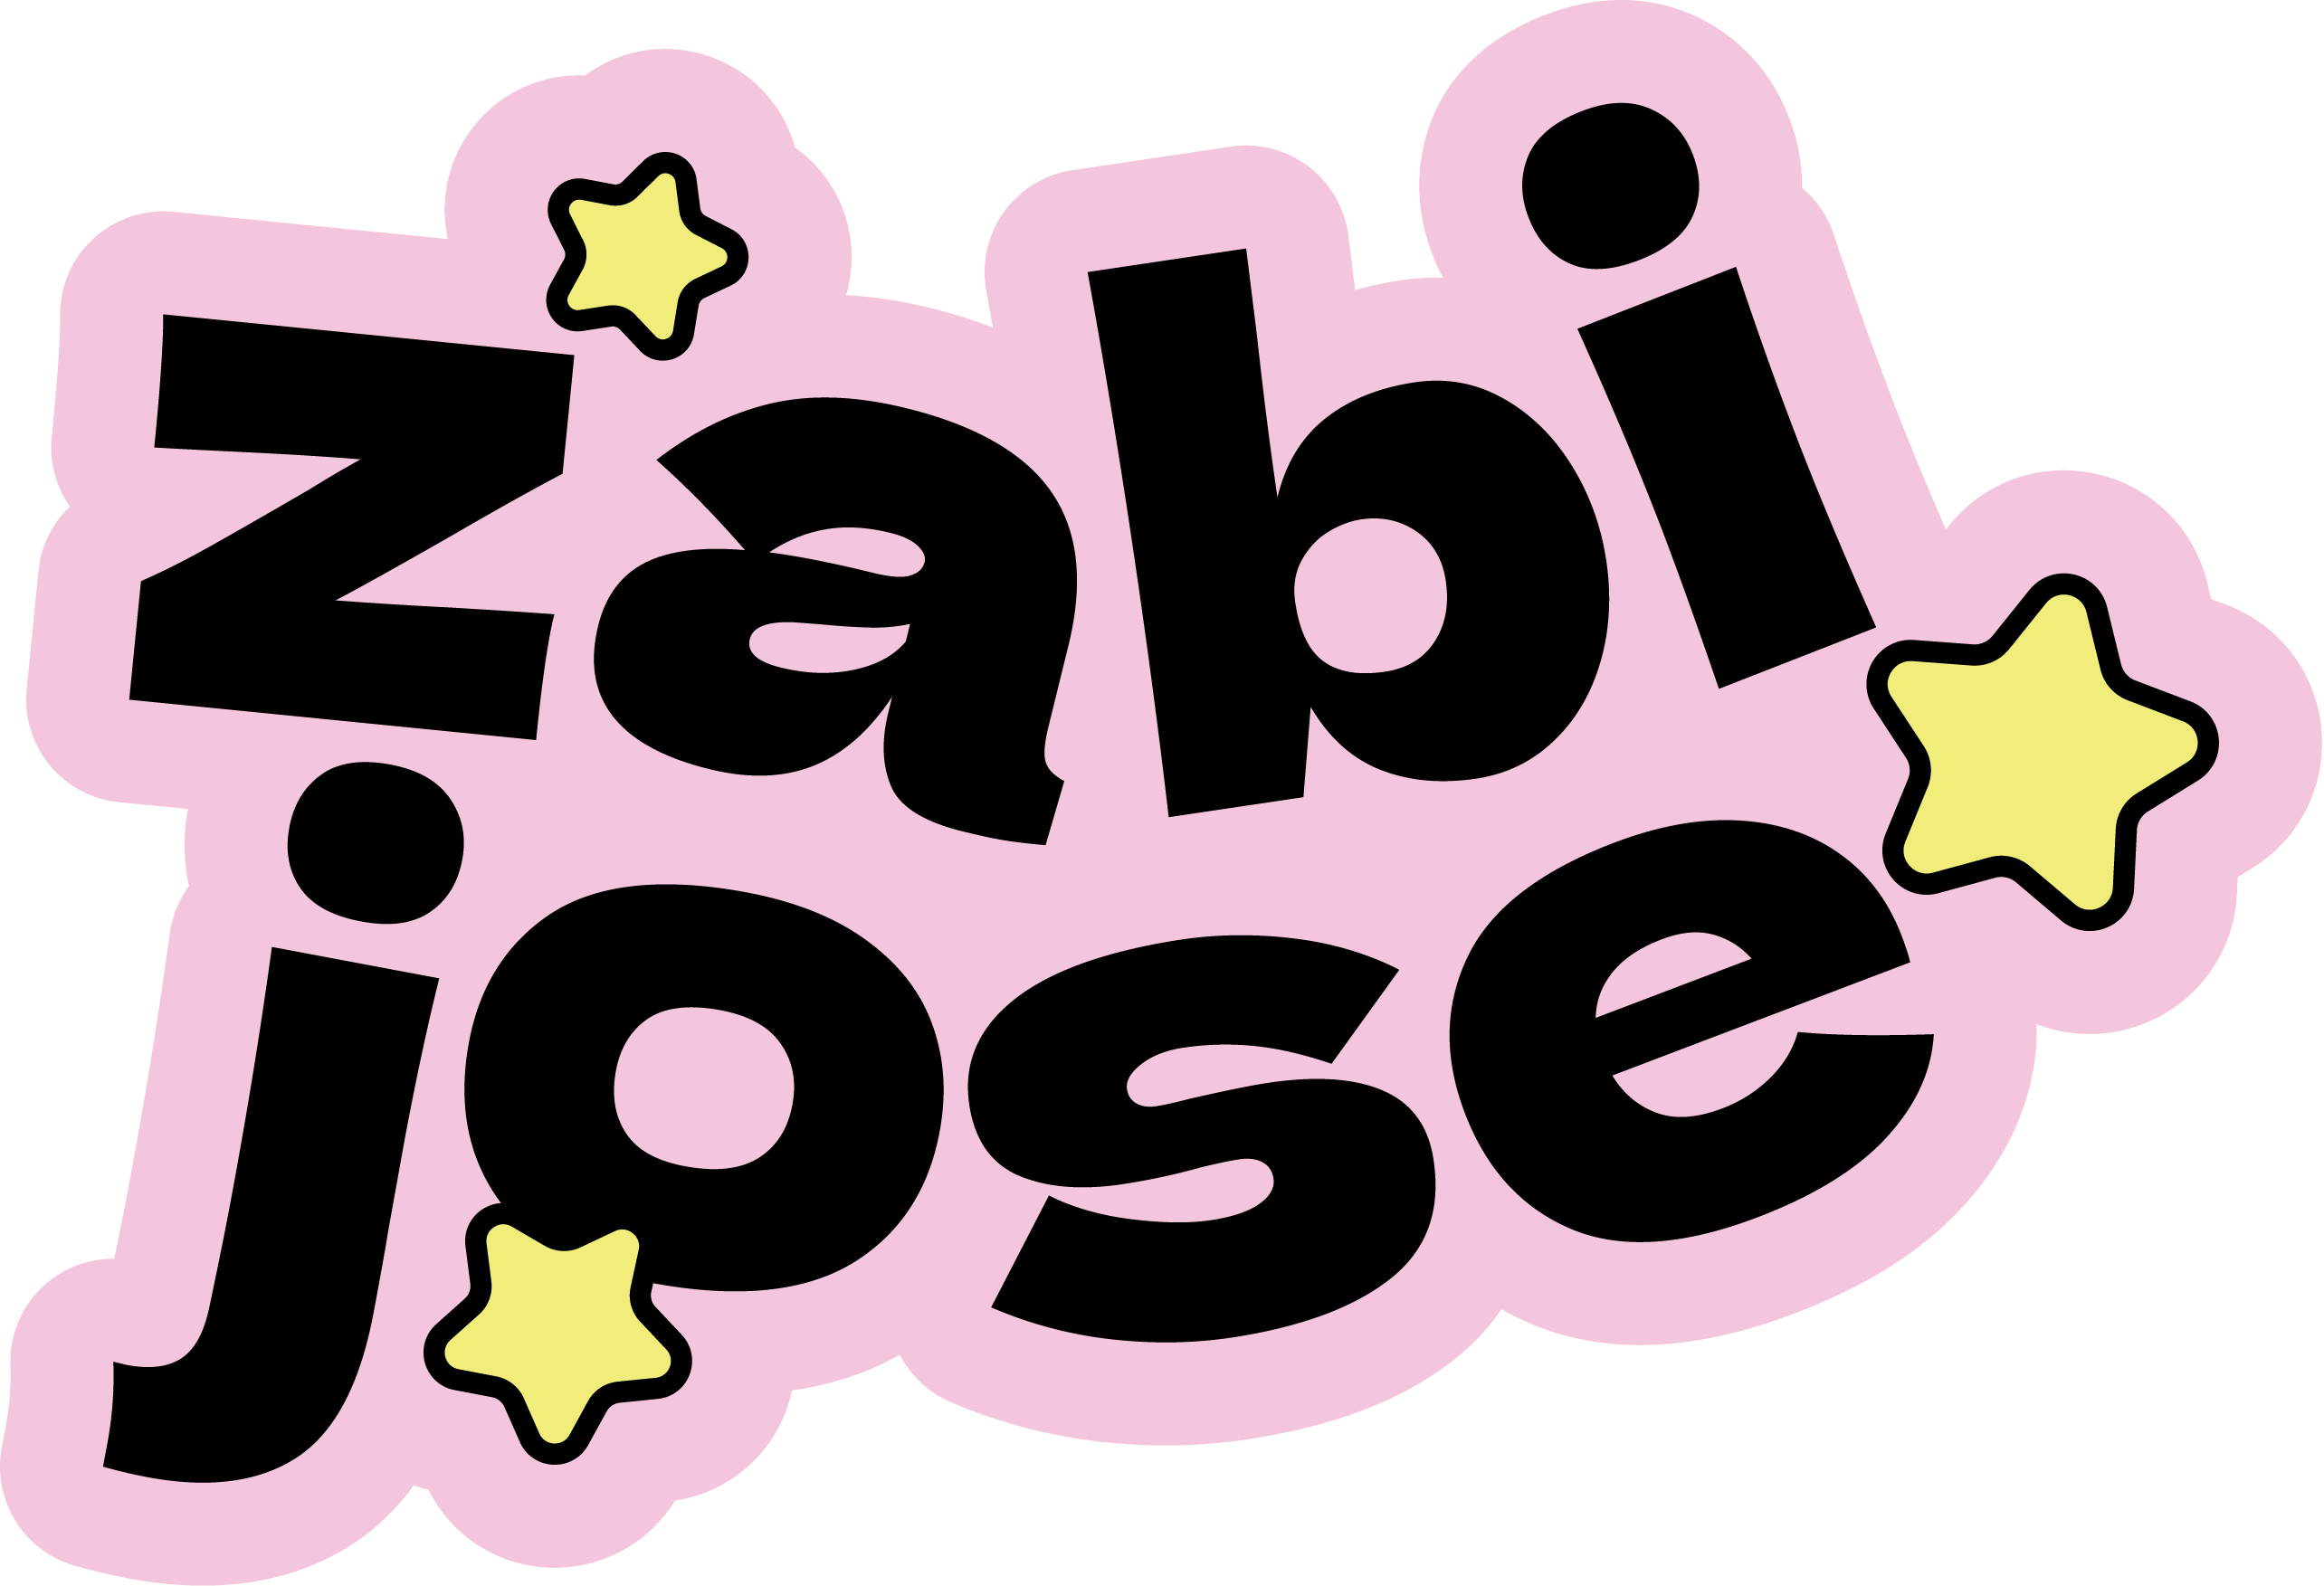 Zabi Jose